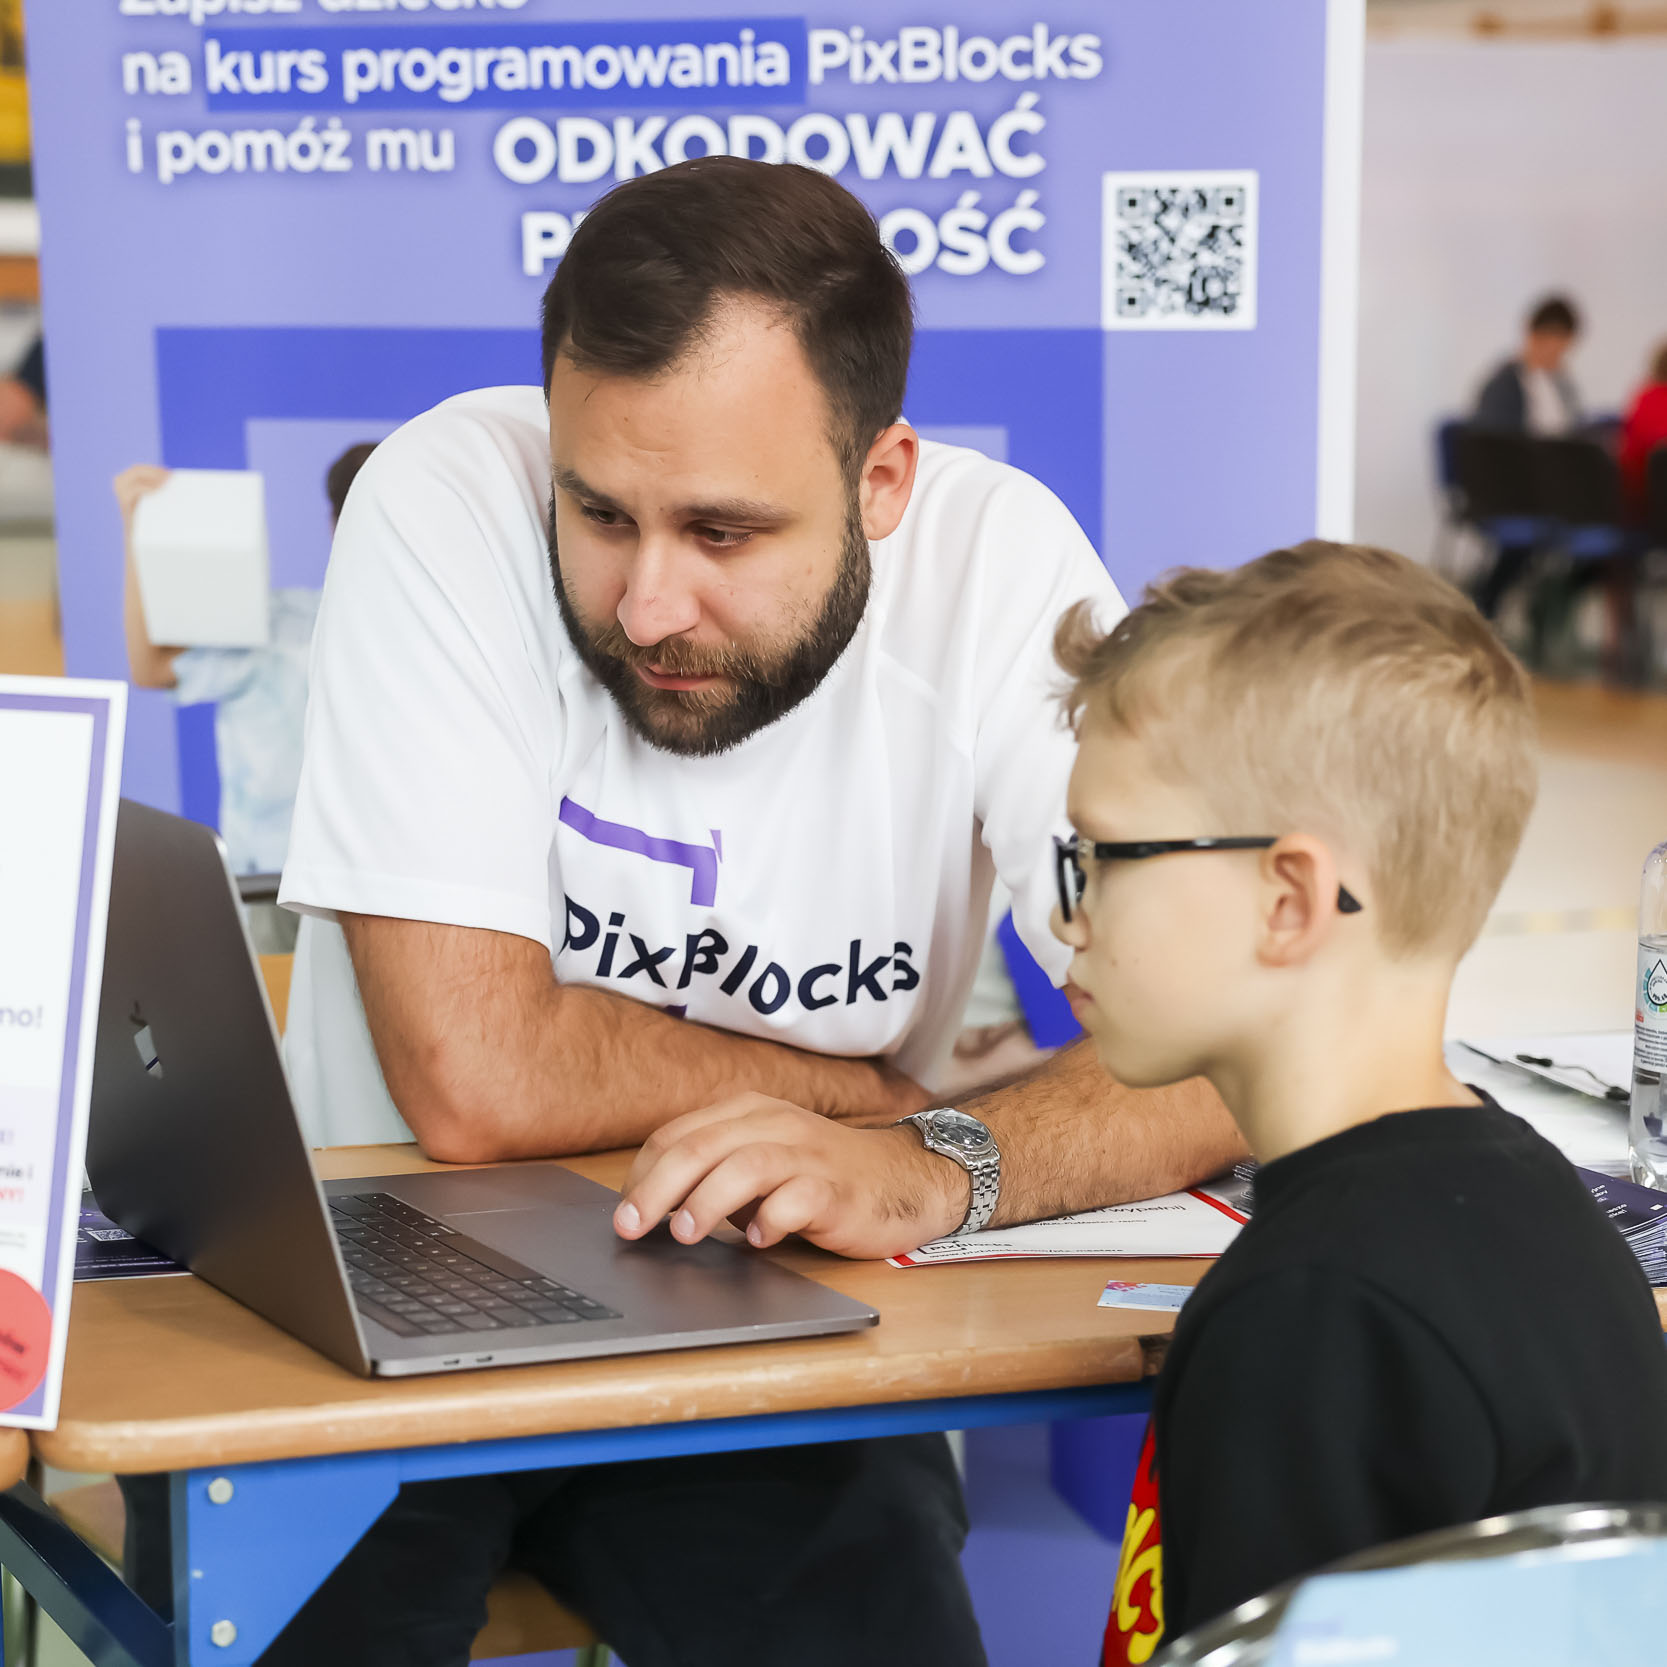 Opiekun warsztatów pokazujący dziecku treści w laptopie, za nimi ścianka kursu programowania PixBlocks